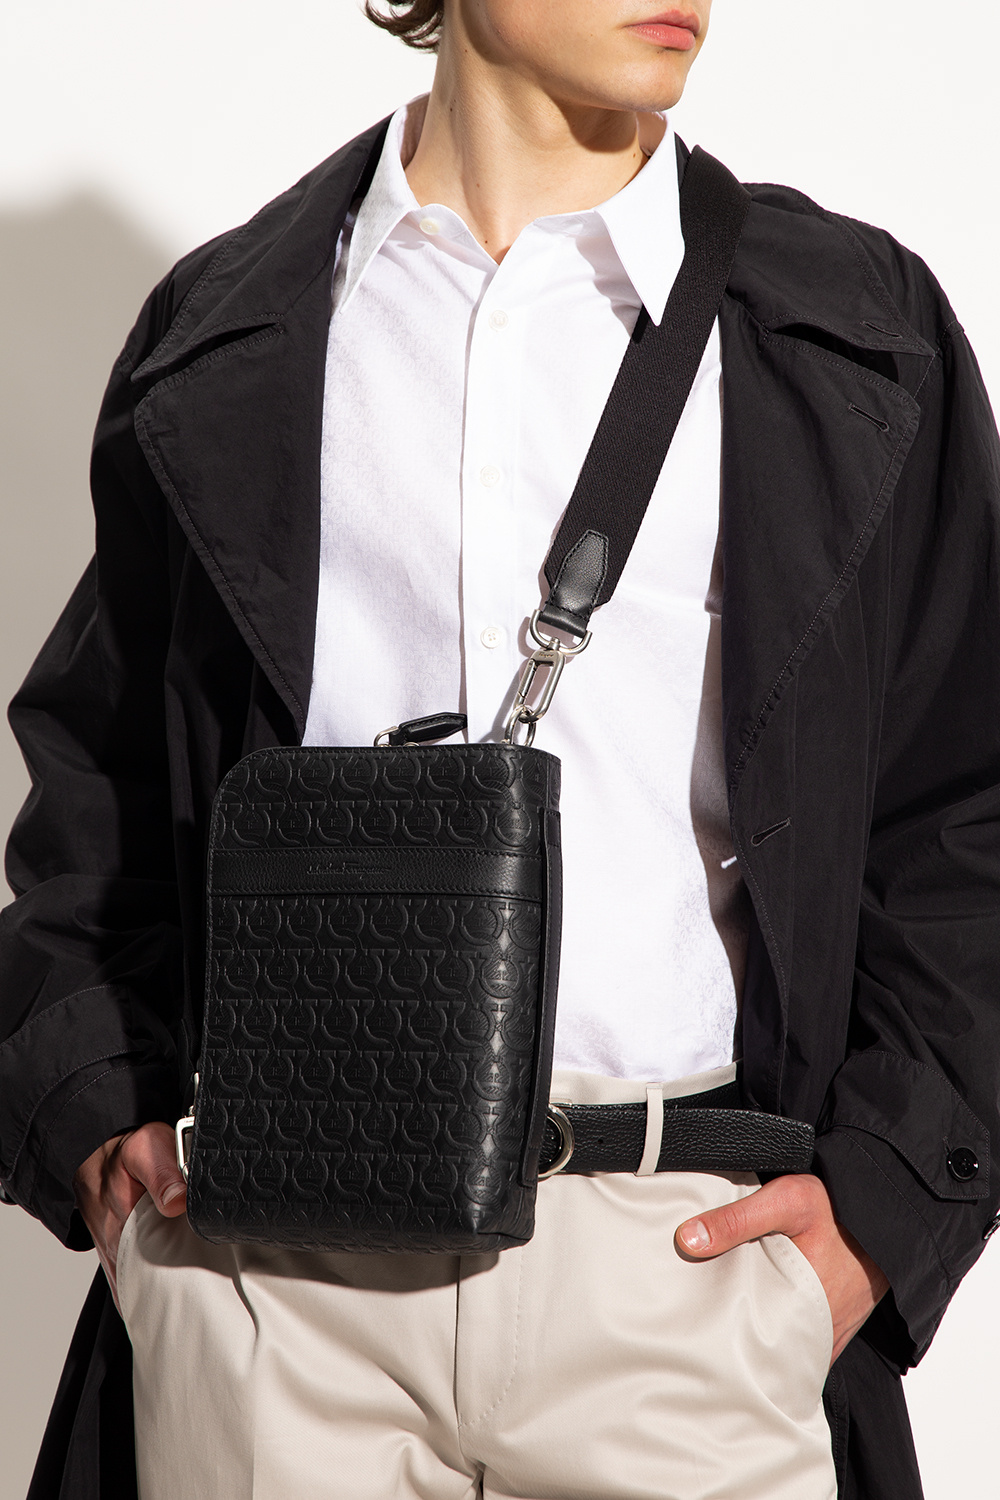 Ferragamo - Men's Gancini Shoulder Bag Messenger - Black - Leather